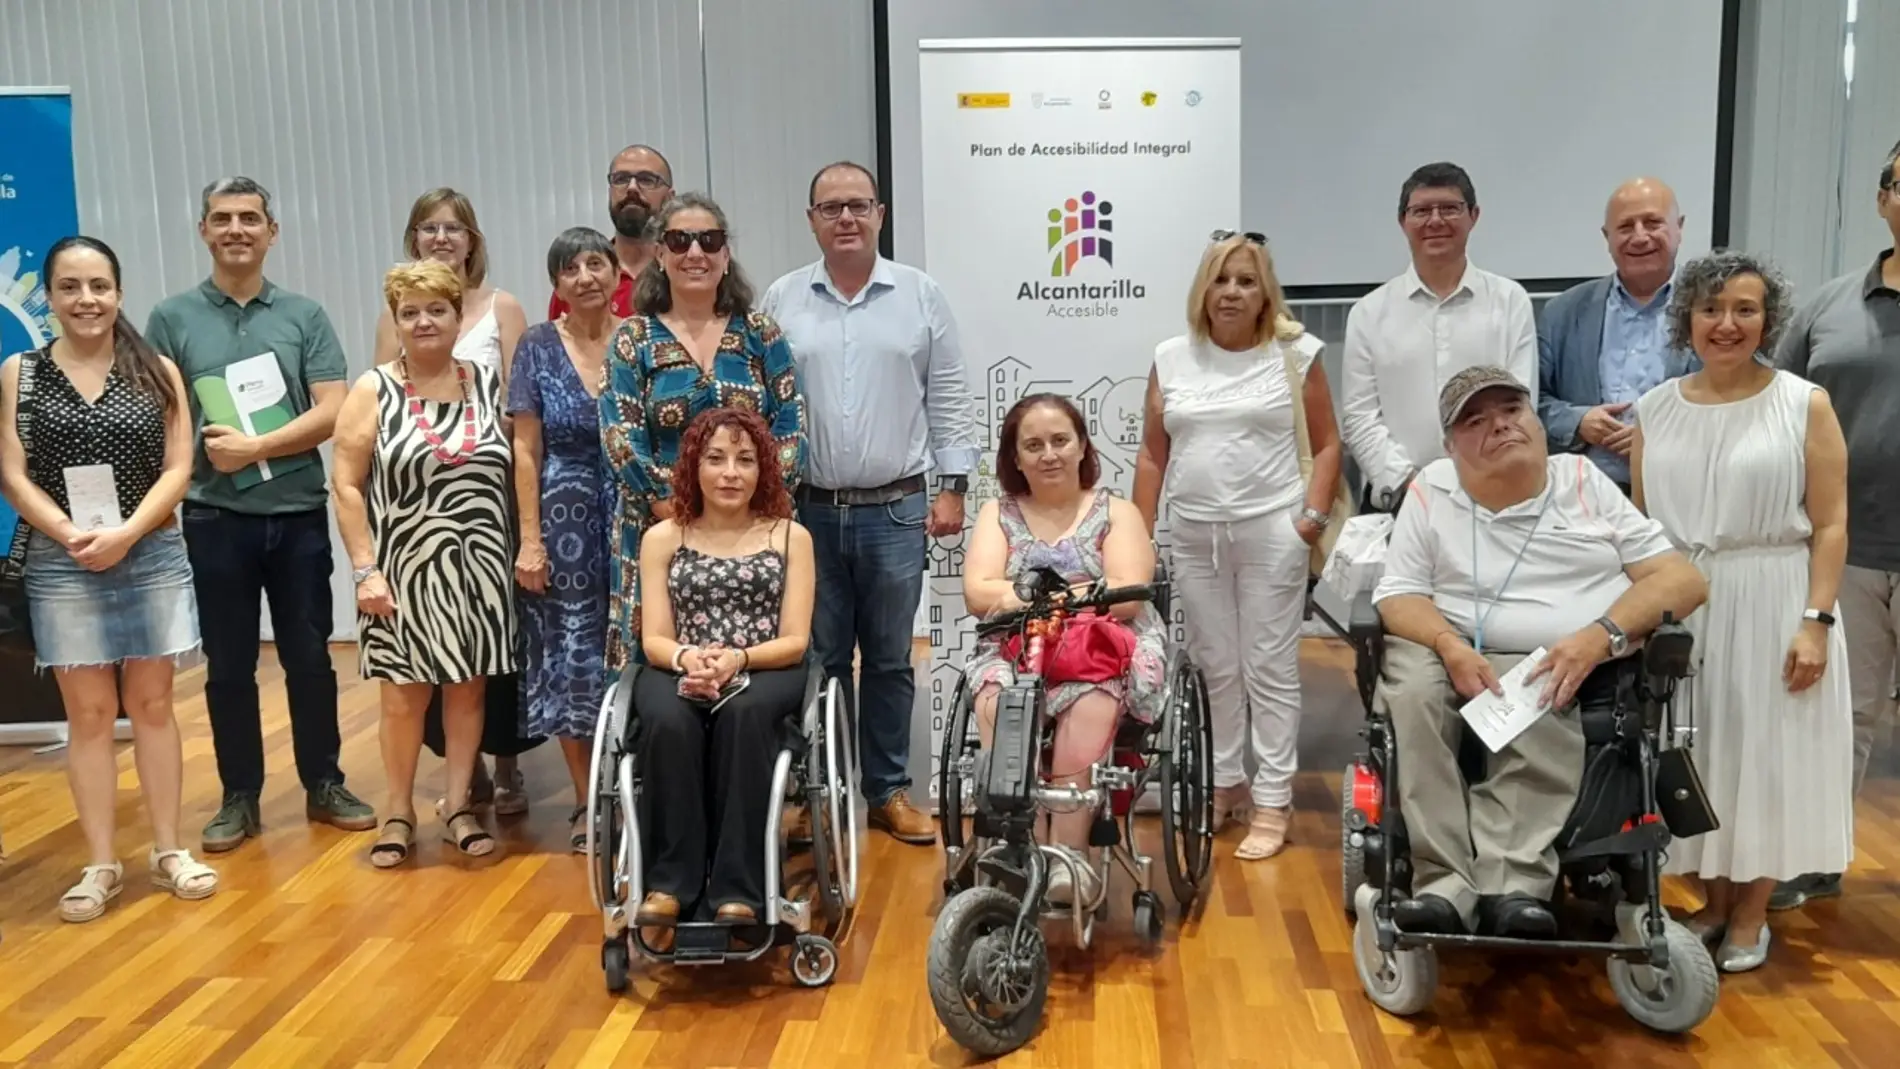 Alcantarilla prepara el Plan de Accesibilidad Universal junto a 16 entidades sociales